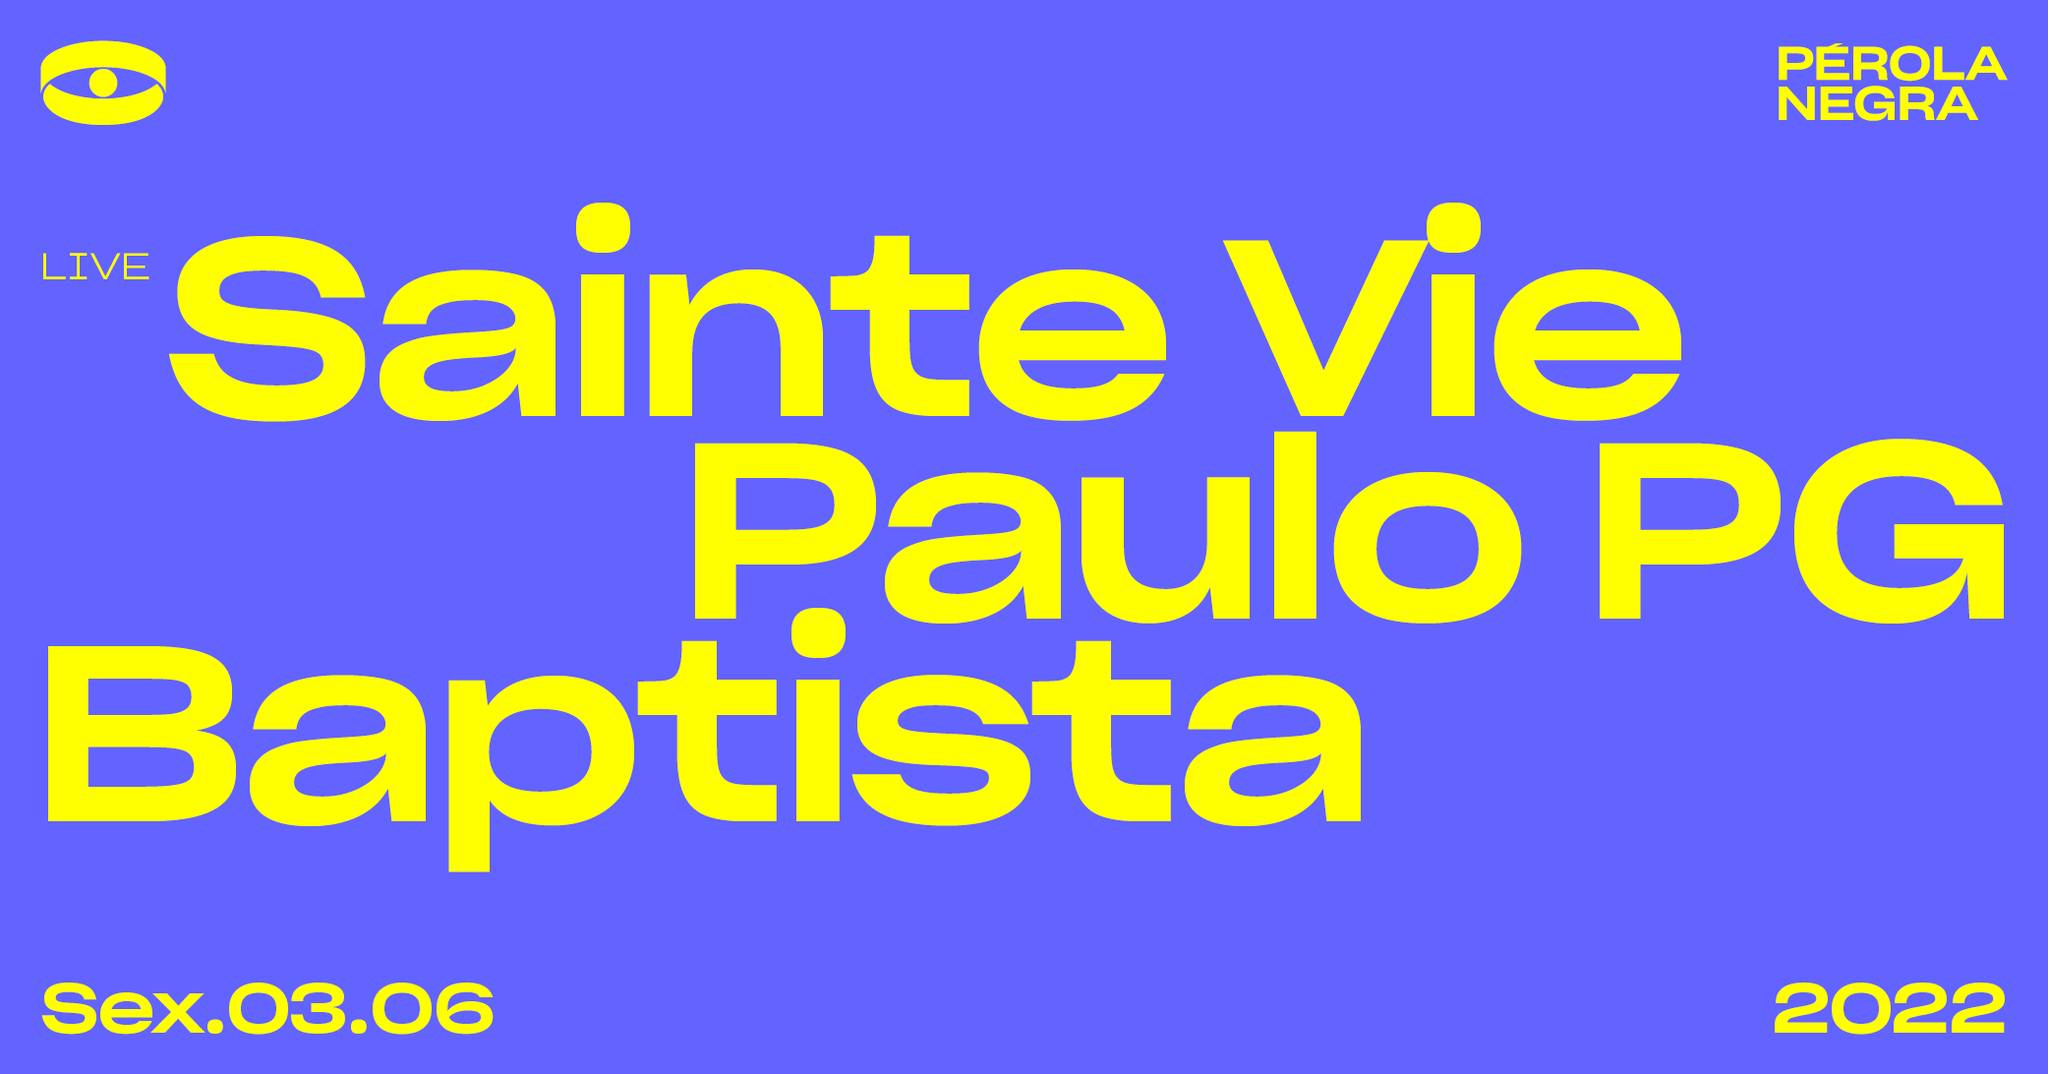 Sainte Vie, Paulo PG, Baptista - Pérola Negra Club